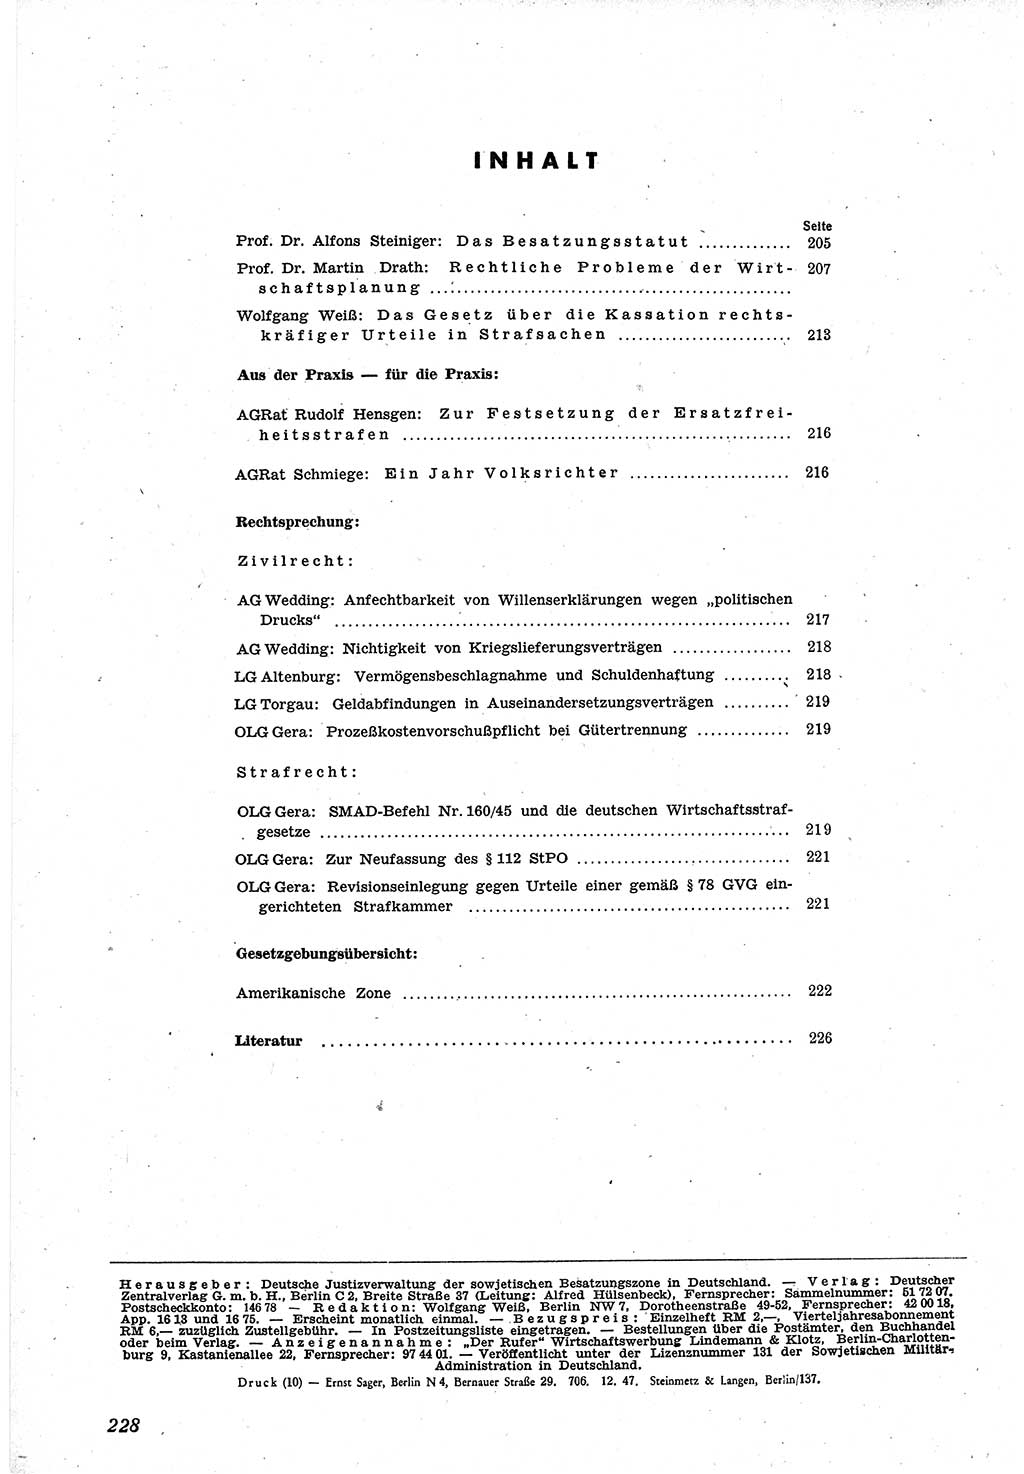 Neue Justiz (NJ), Zeitschrift für Recht und Rechtswissenschaft [Sowjetische Besatzungszone (SBZ) Deutschland], 1. Jahrgang 1947, Seite 228 (NJ SBZ Dtl. 1947, S. 228)